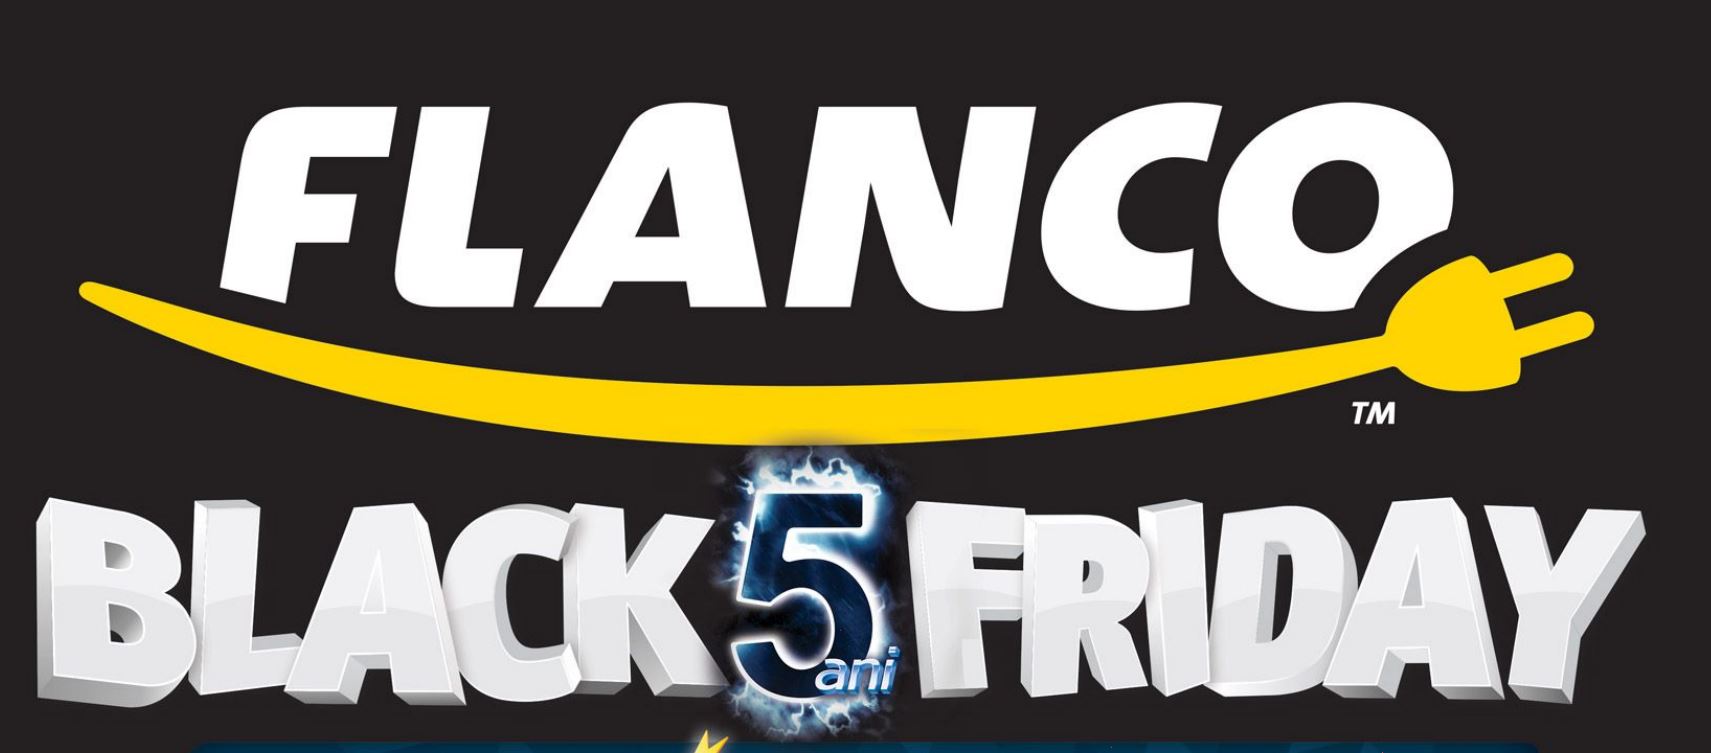 Katalog zniżek Flanco Black Friday 2015